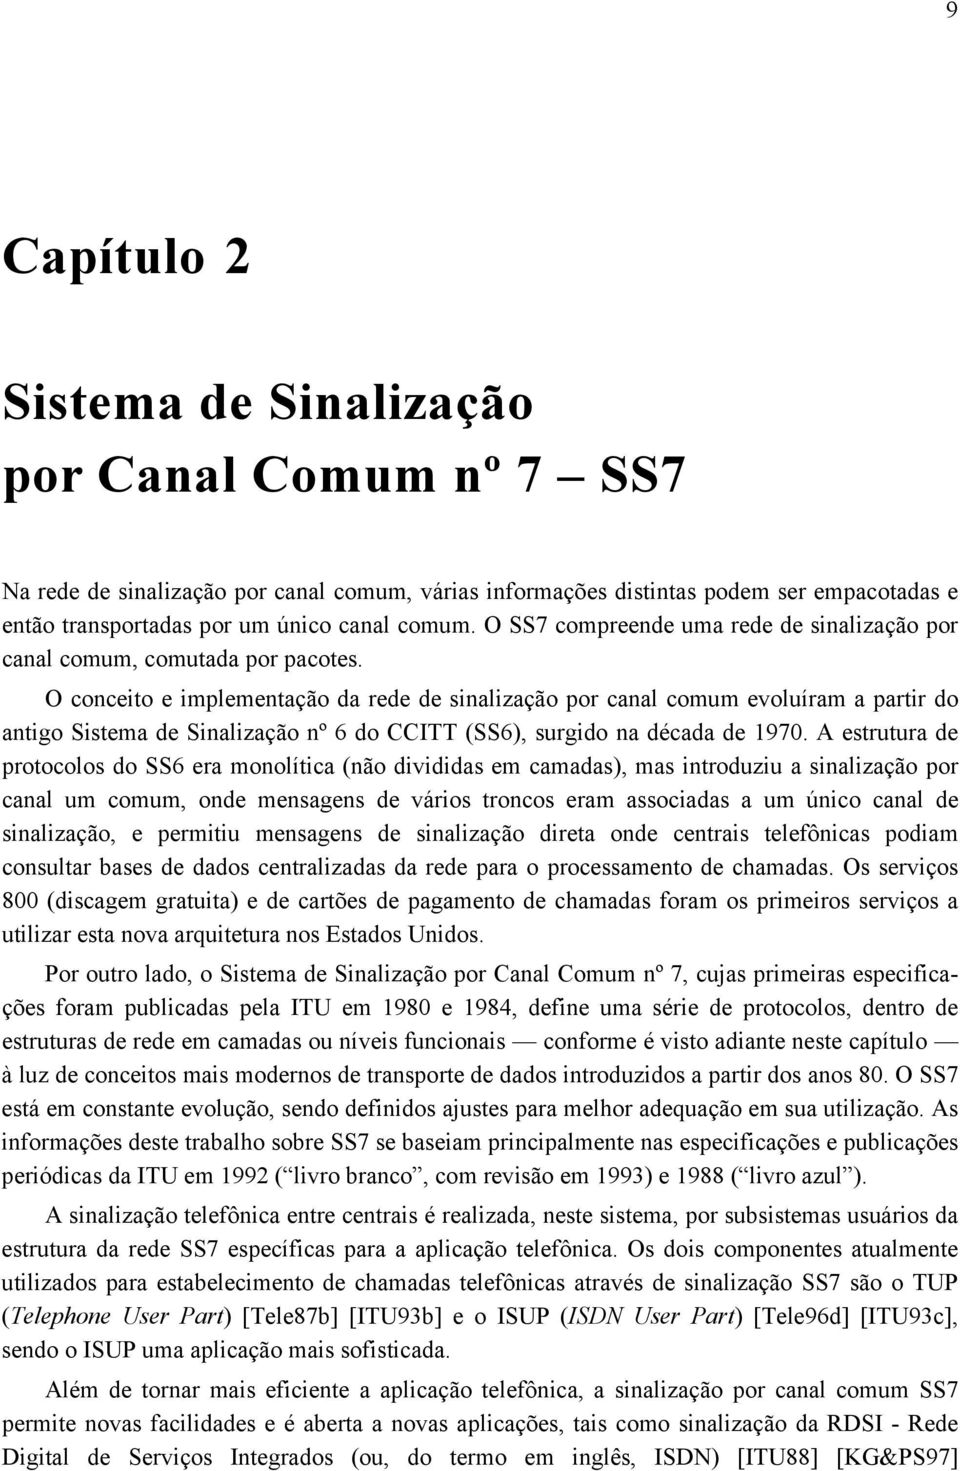 O conceito e implementação da rede de sinalização por canal comum evoluíram a partir do antigo Sistema de Sinalização nº 6 do CCITT (SS6), surgido na década de 1970.